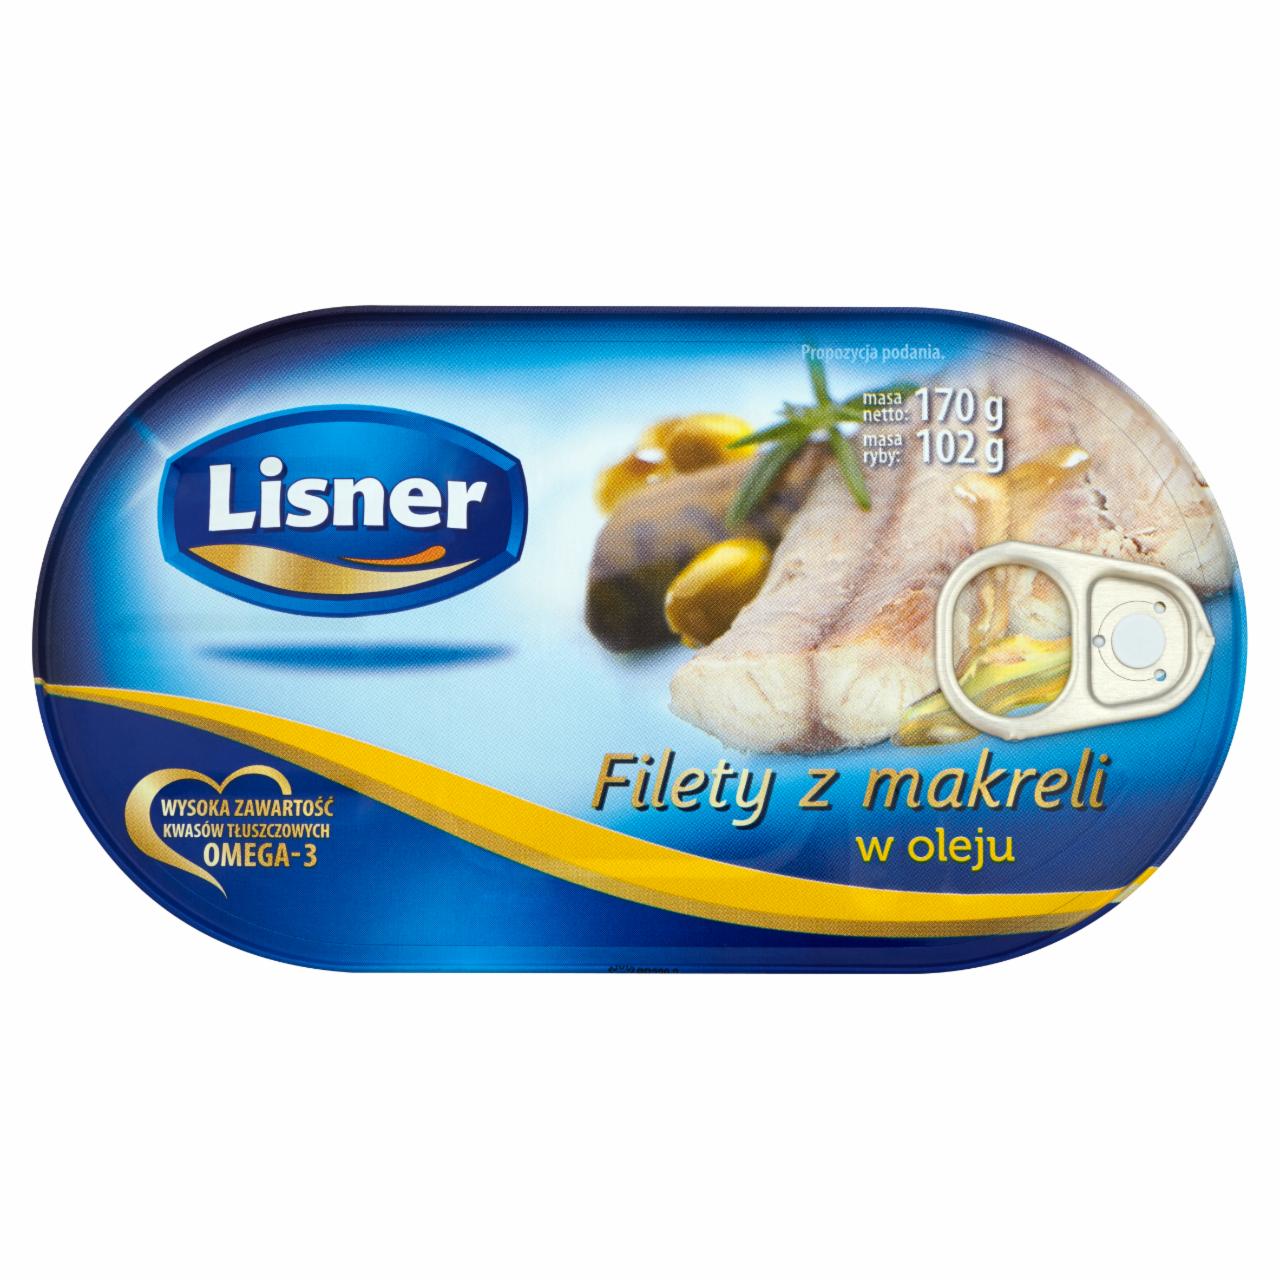 Zdjęcia - Lisner Filety z makreli w oleju 170 g